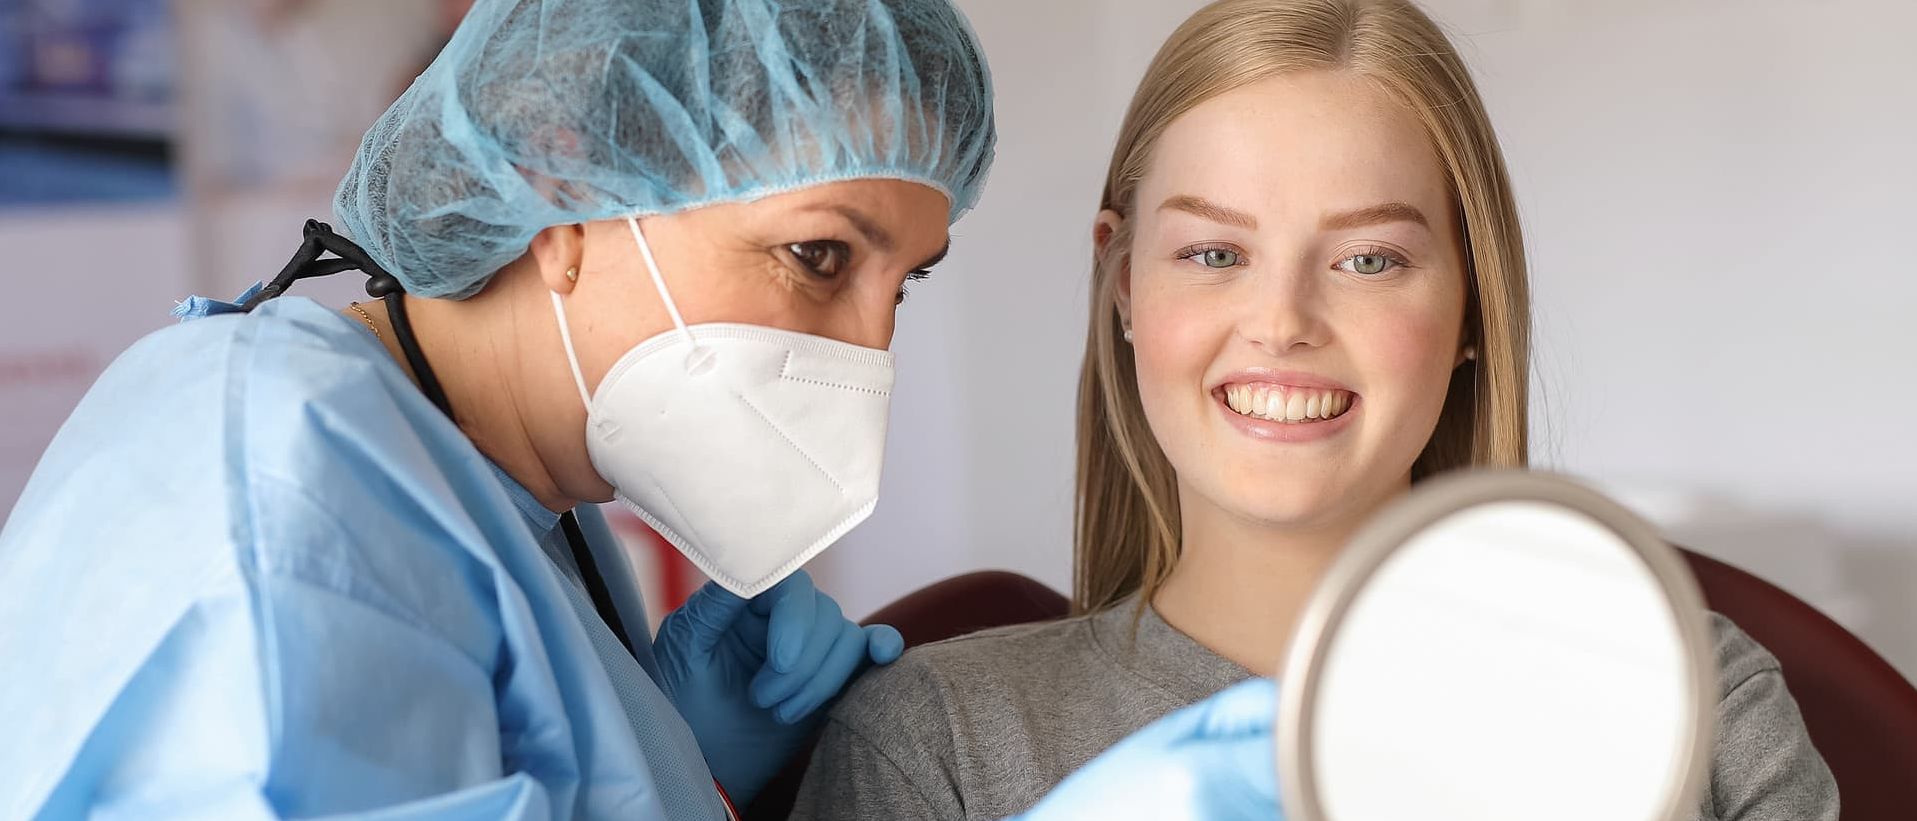 Zahnersatz mit Zahnimplantaten in Praxis bei Mannheim